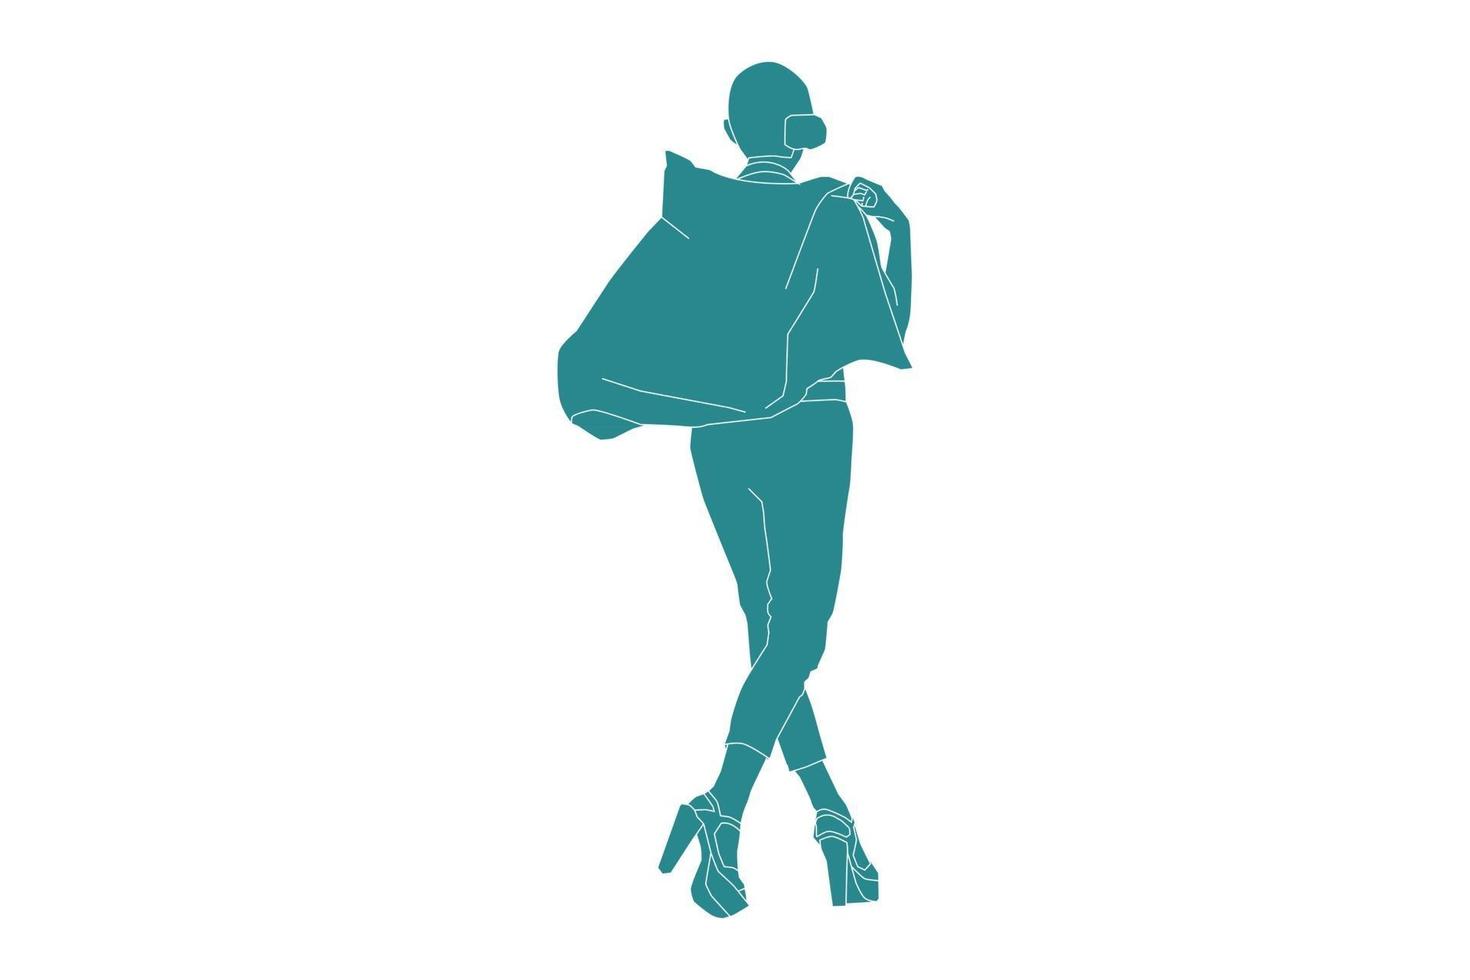 vektor illustration av fashionabla kvinna poserar ser bakifrån, platt stil med disposition